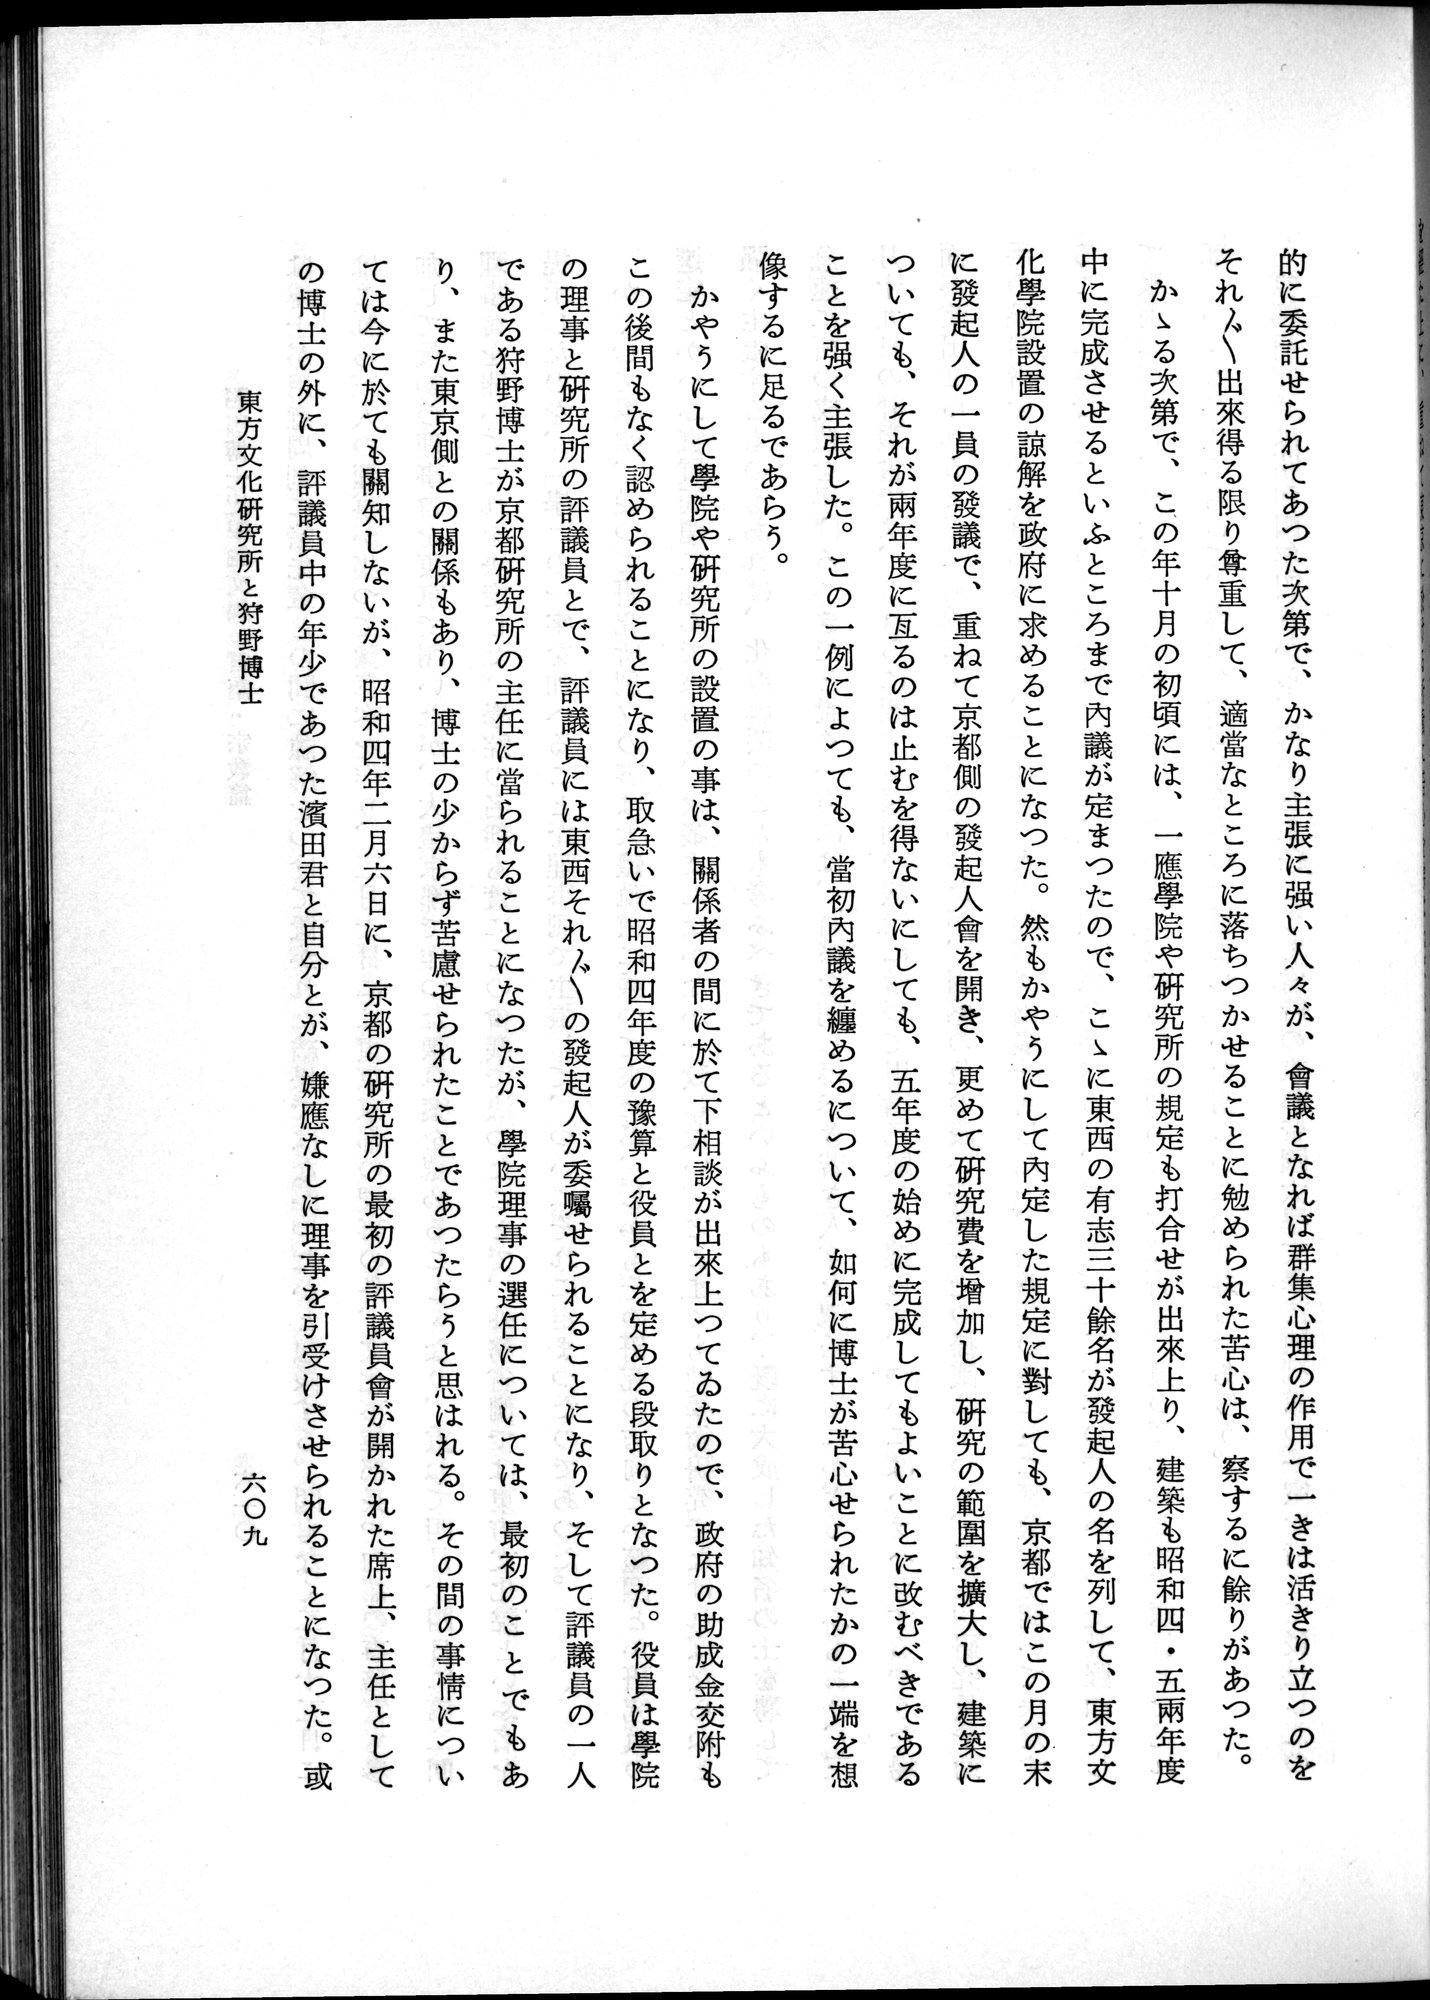 羽田博士史学論文集 : vol.2 / Page 673 (Grayscale High Resolution Image)